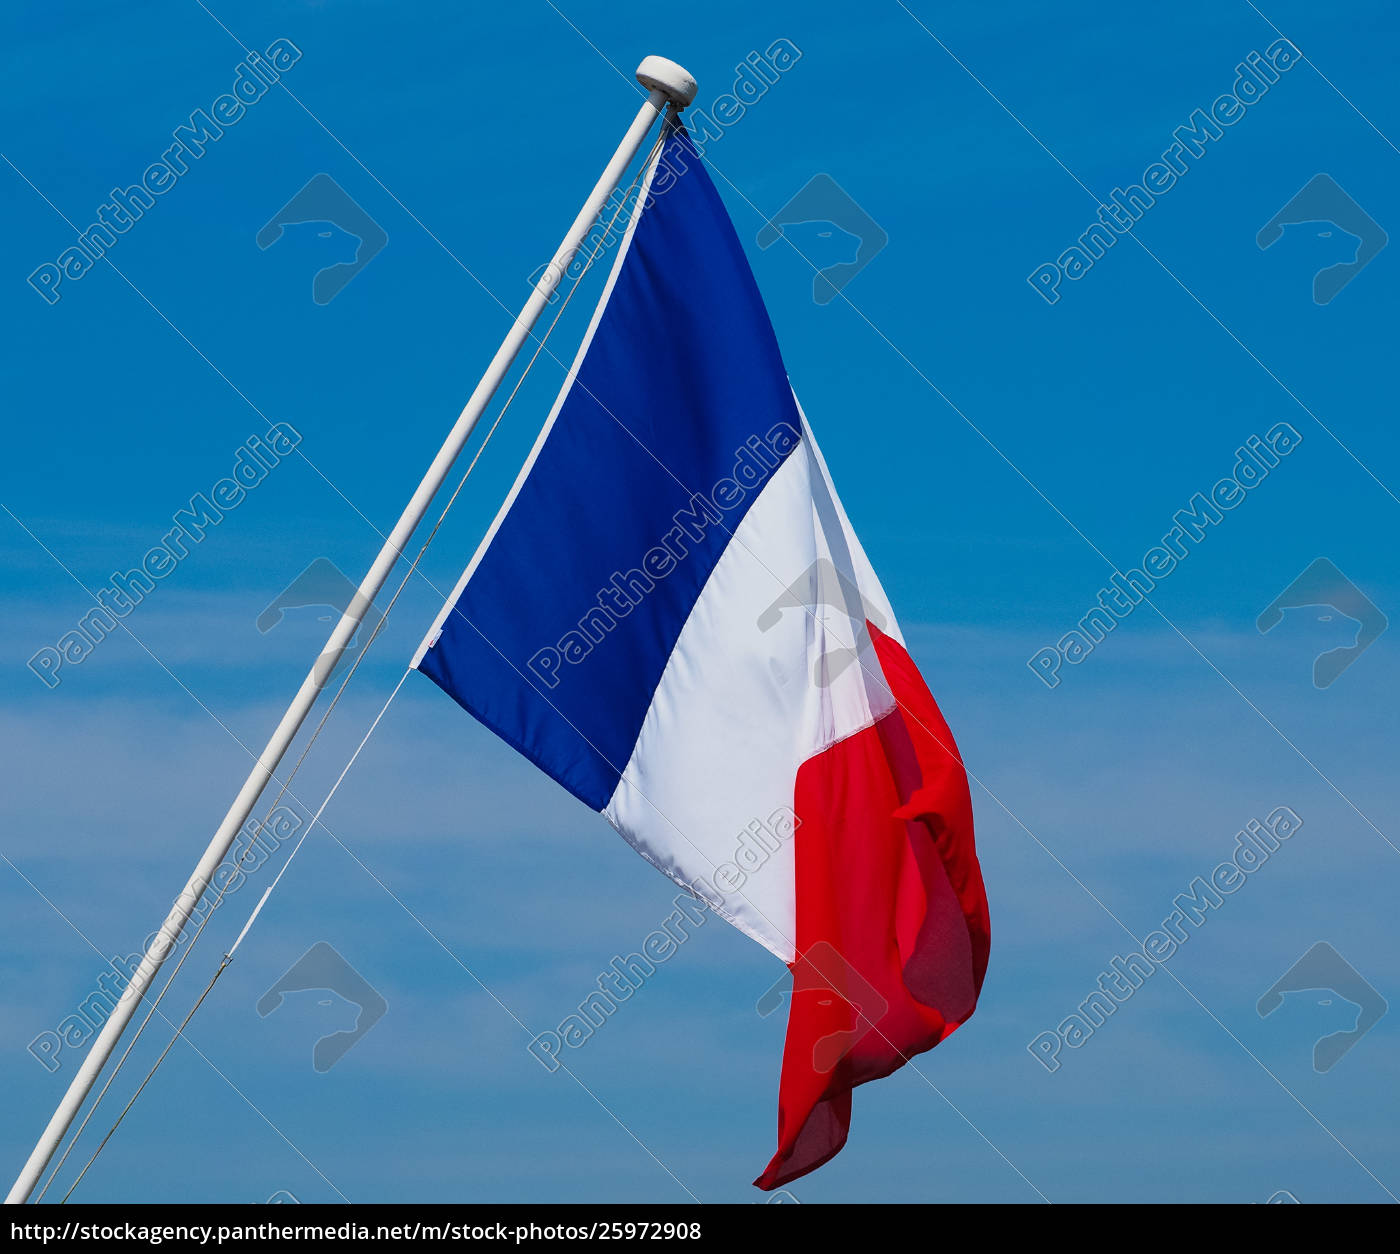 Fotodruck mit französische Flagge, Frankreich Flagge von